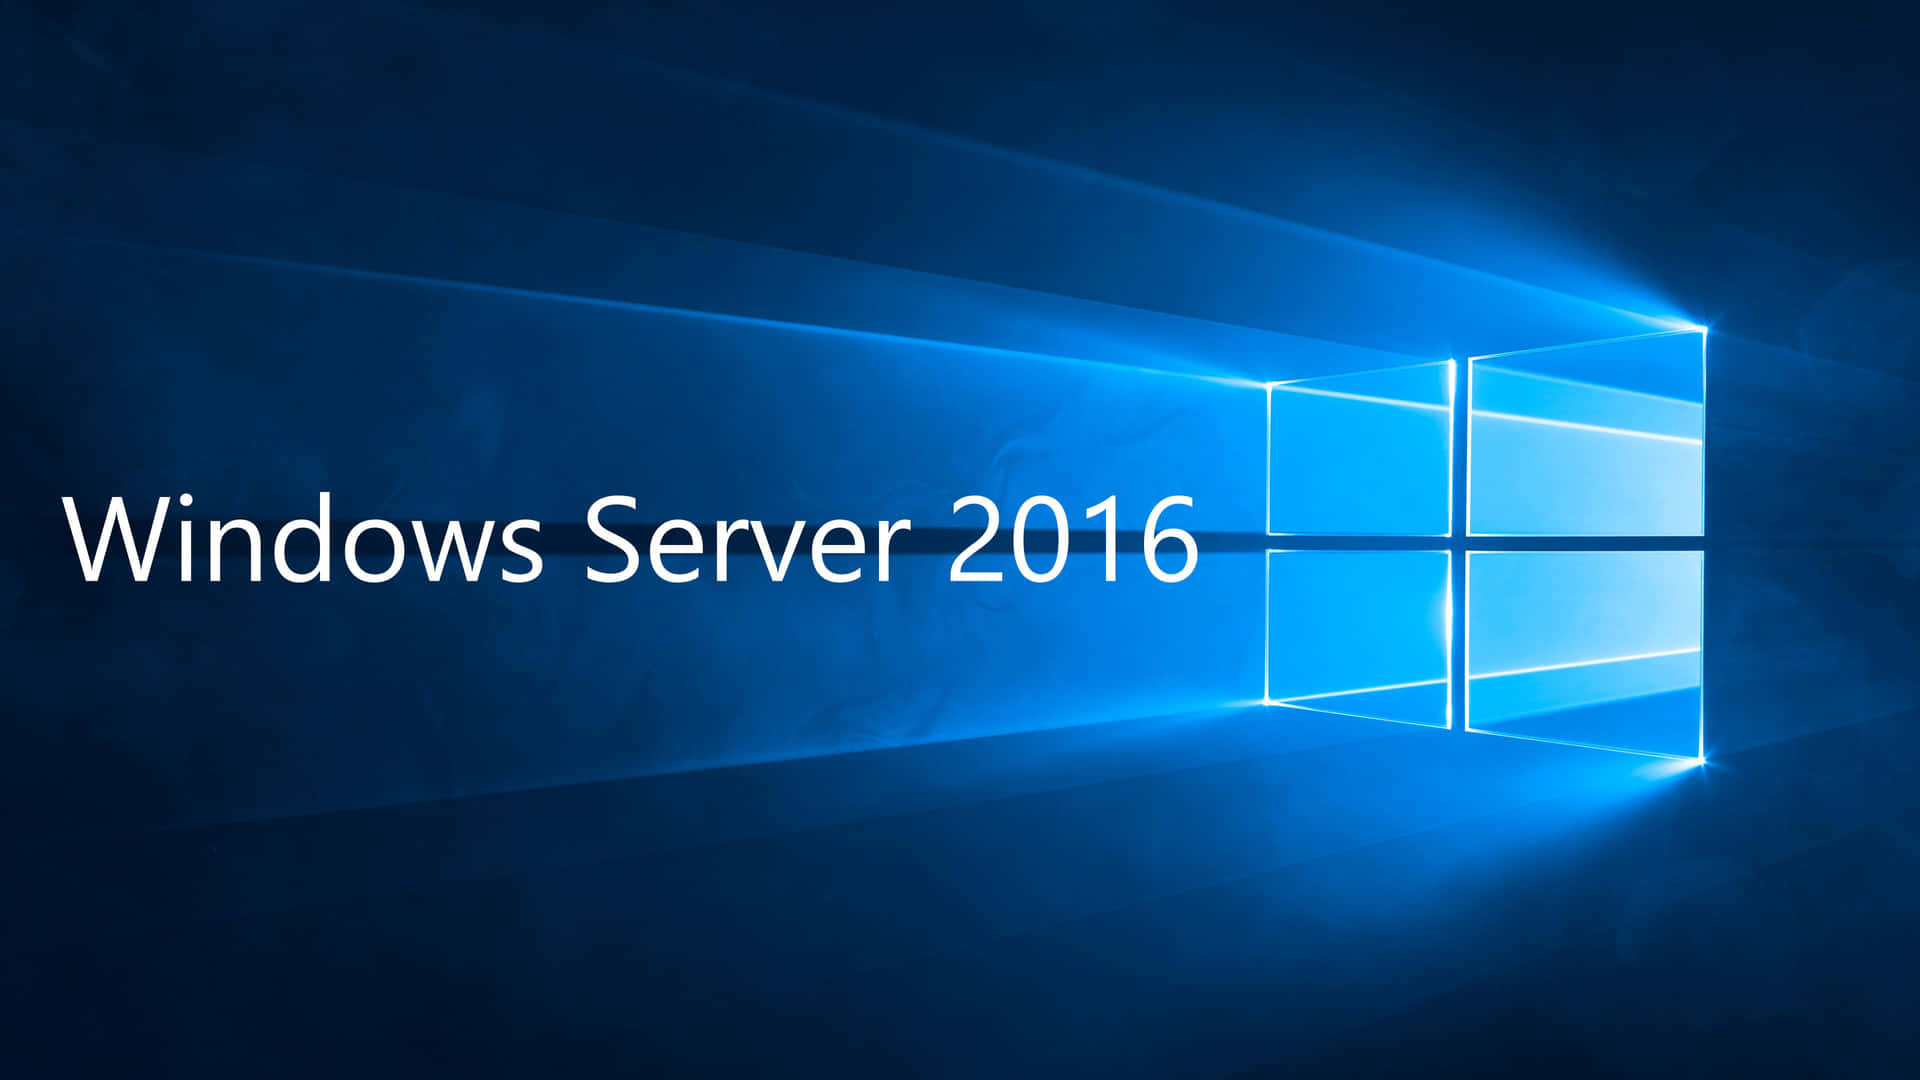 Fundoazul Do Windows Server 2016.